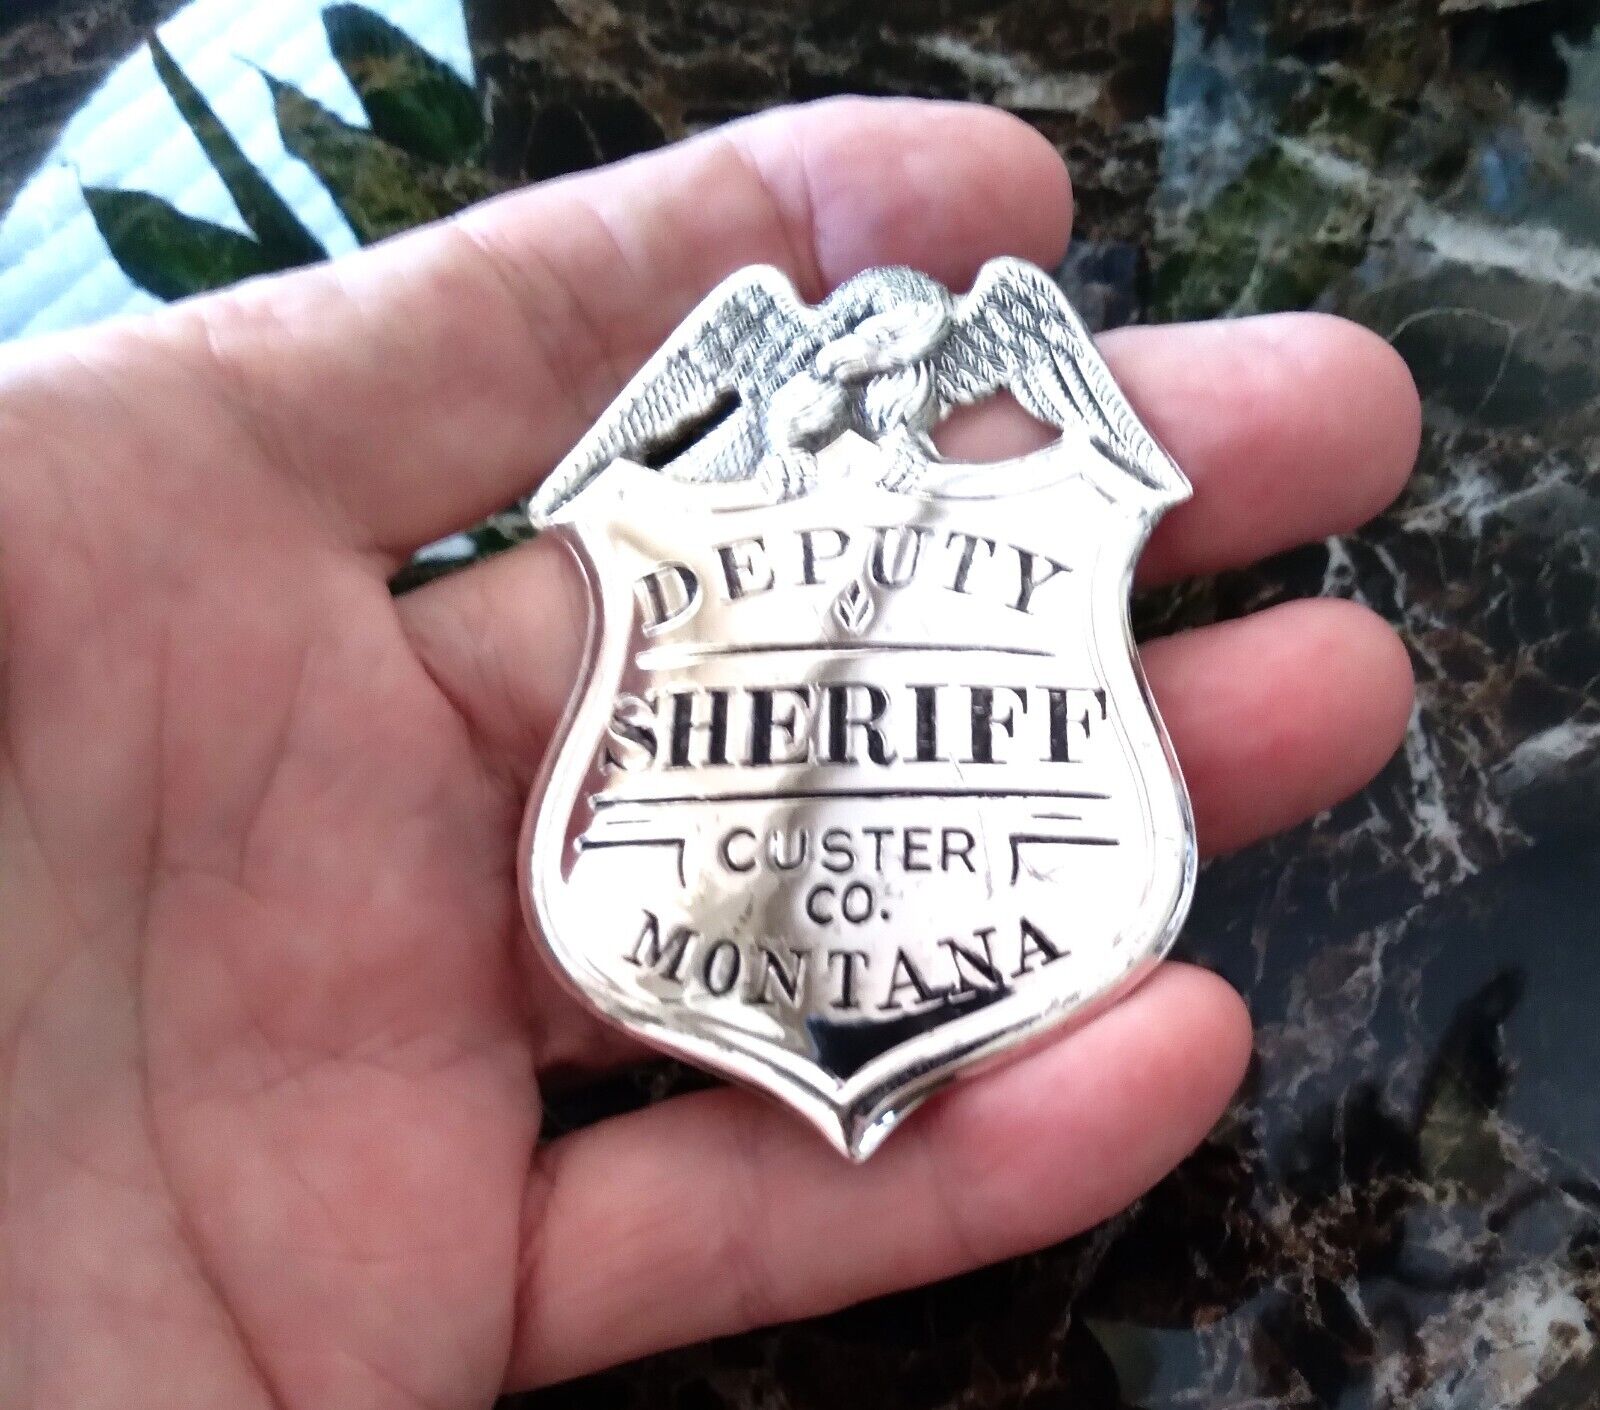 Deputy Sheriff Custer CO. Montana - Sterling Silver - Franklin Mint